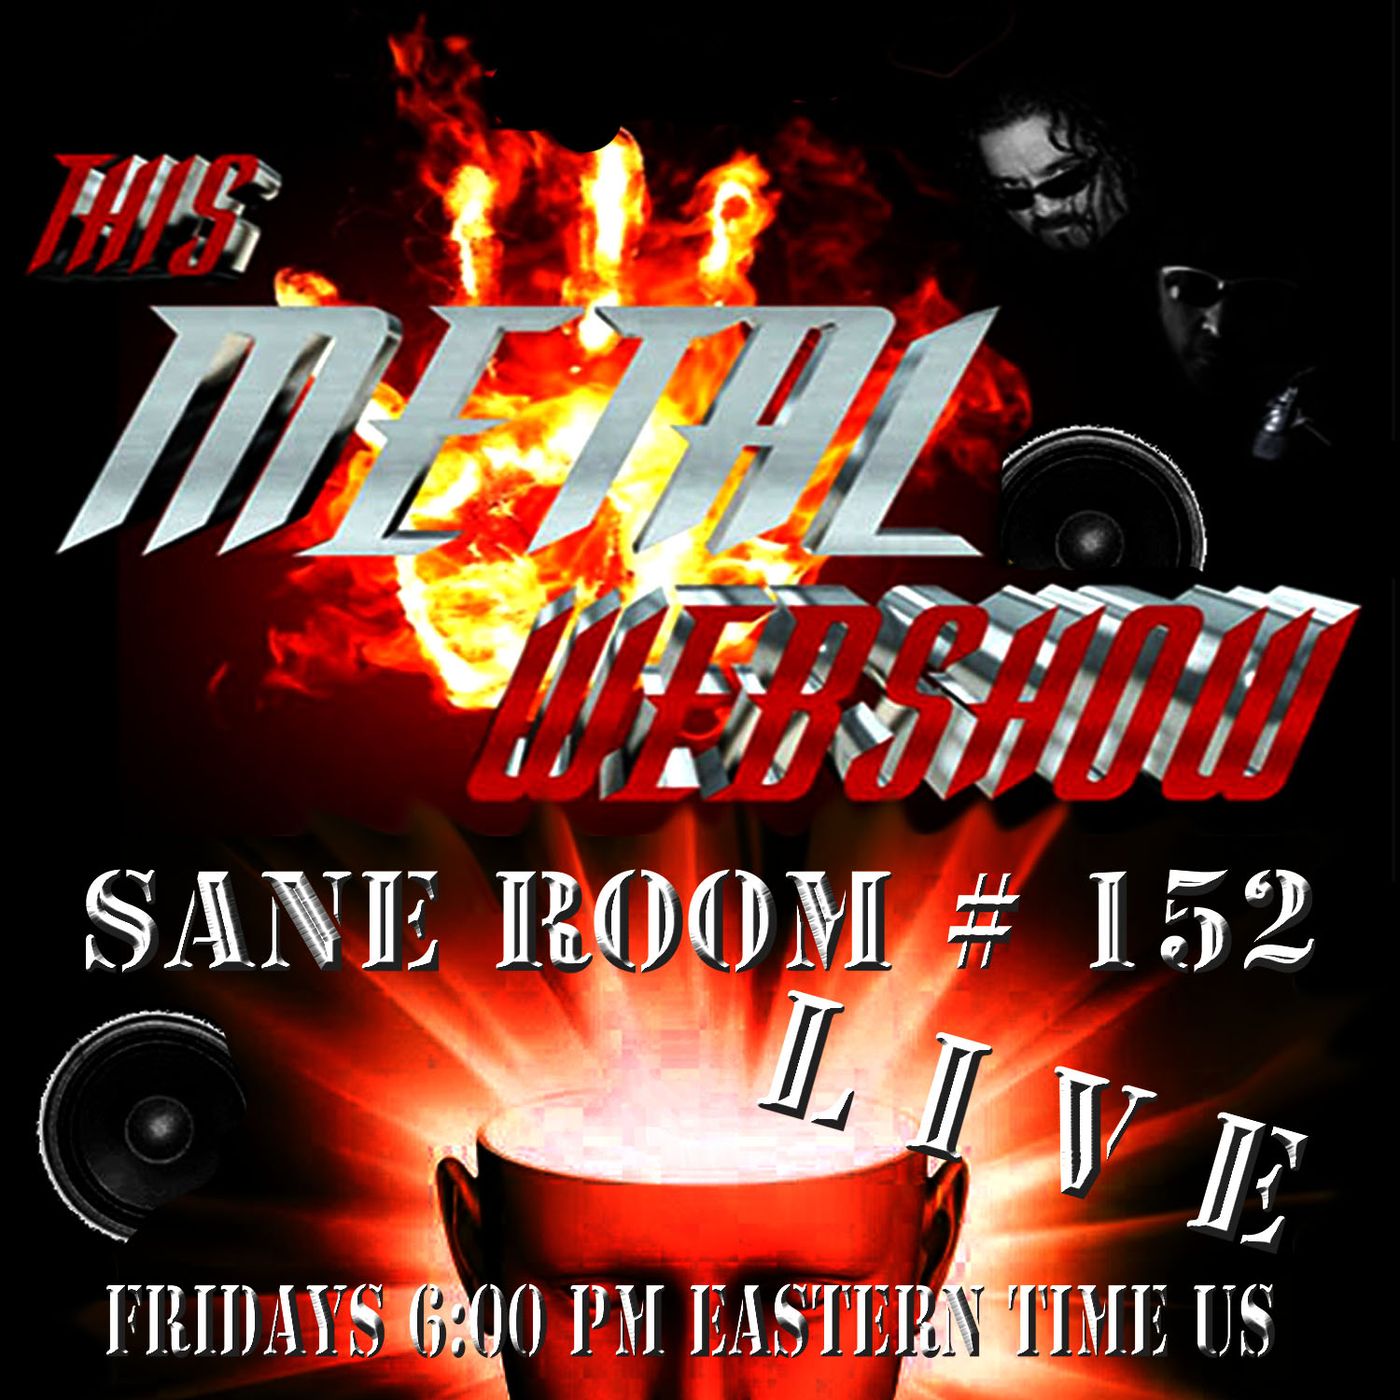 This Metal Webshow Sane Room # 152 L I V E